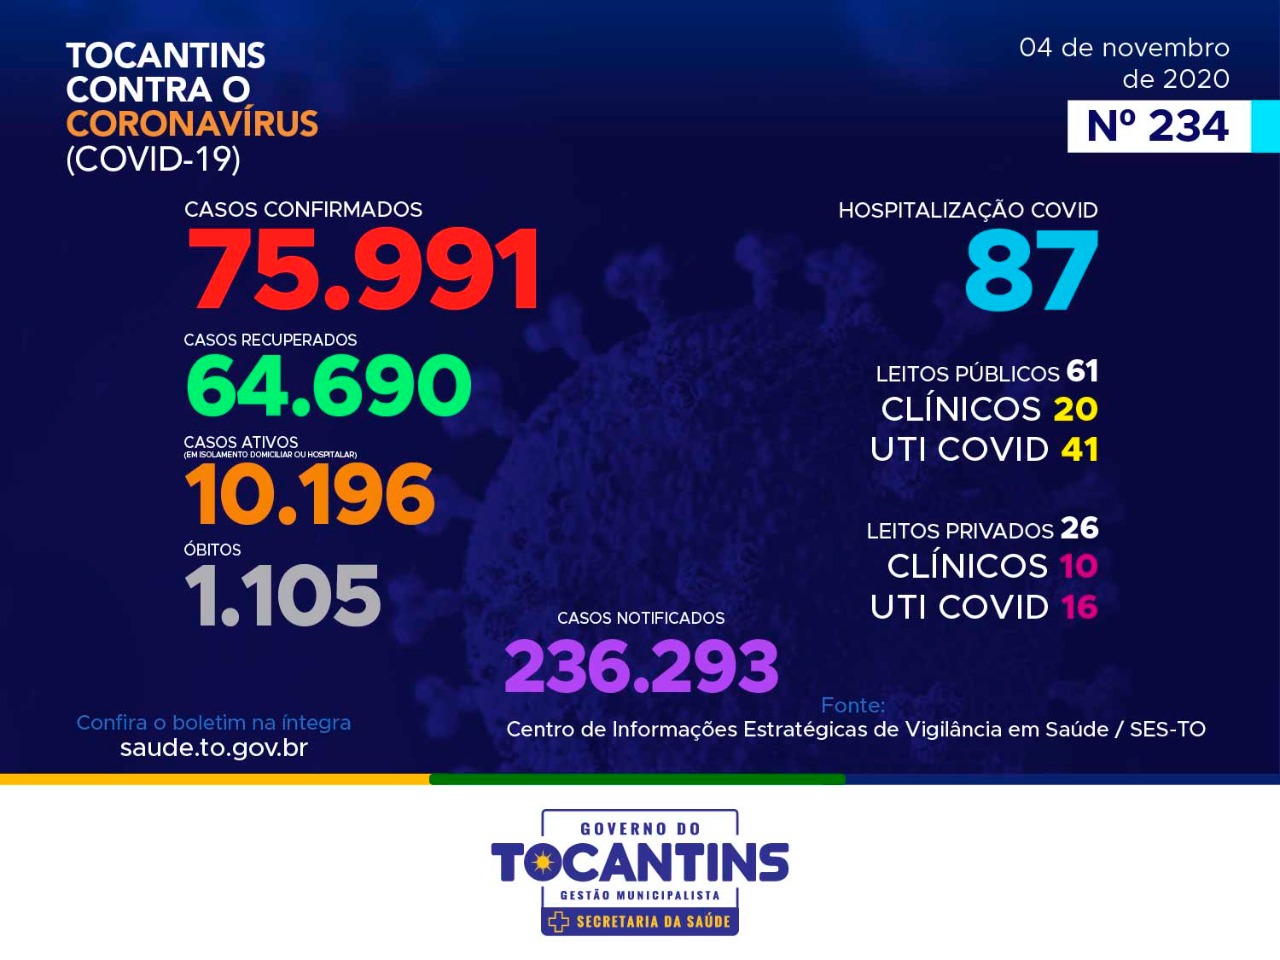 Coronavírus: com 325 novos casos hoje, Tocantins se aproxima das 76 mil conformações